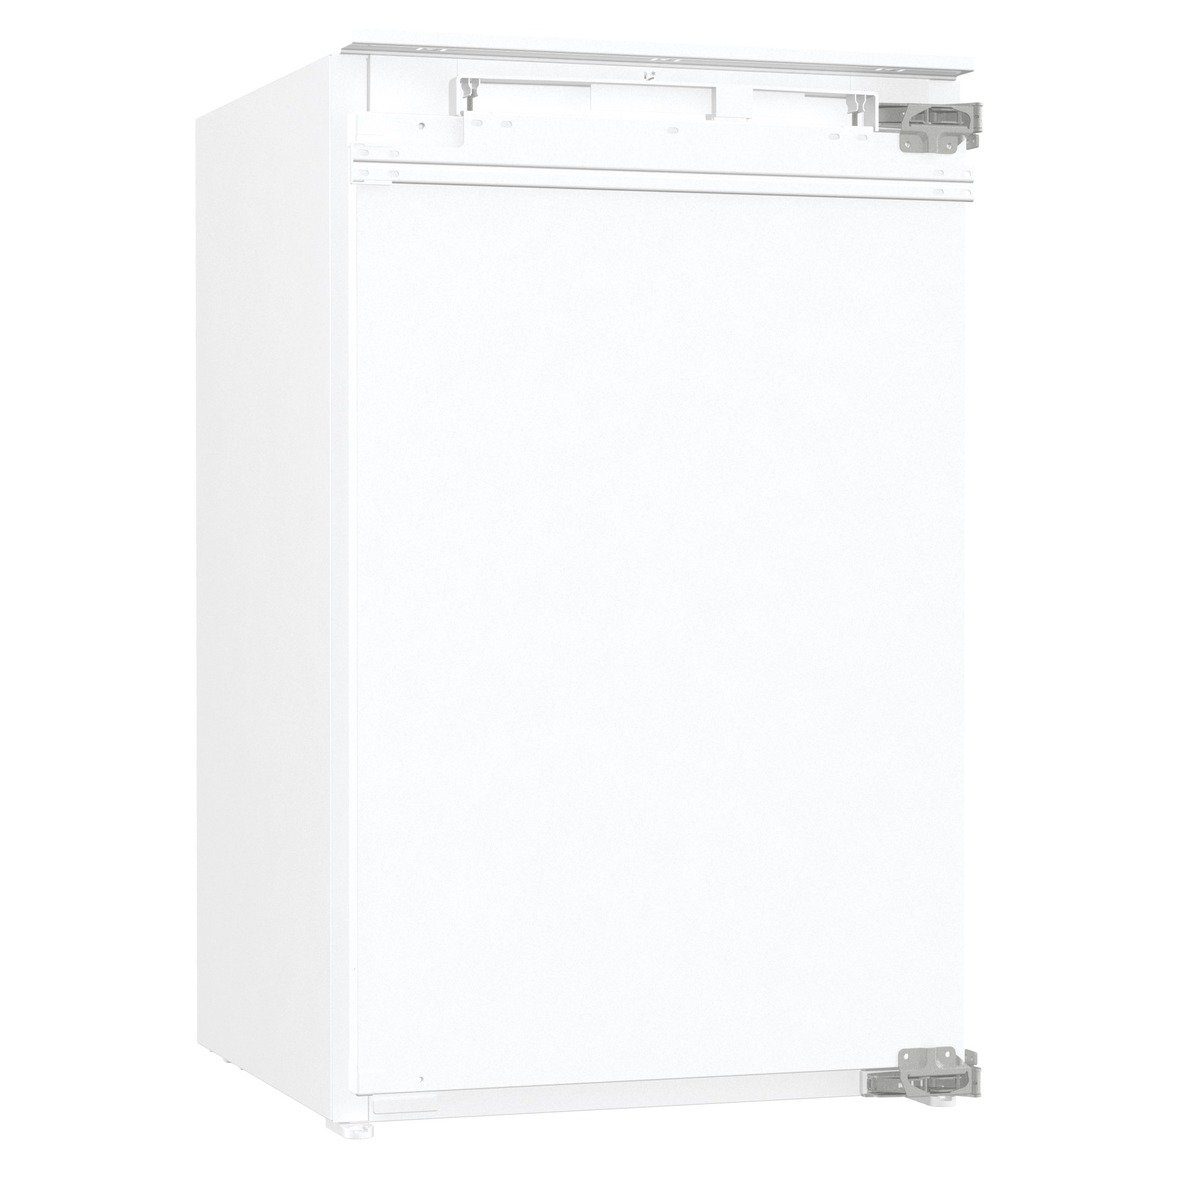 GORENJE Einbaukühlschrank RBI 209 EE1, 87,5 cm hoch, 54 cm breit, 114 Liter Volumen